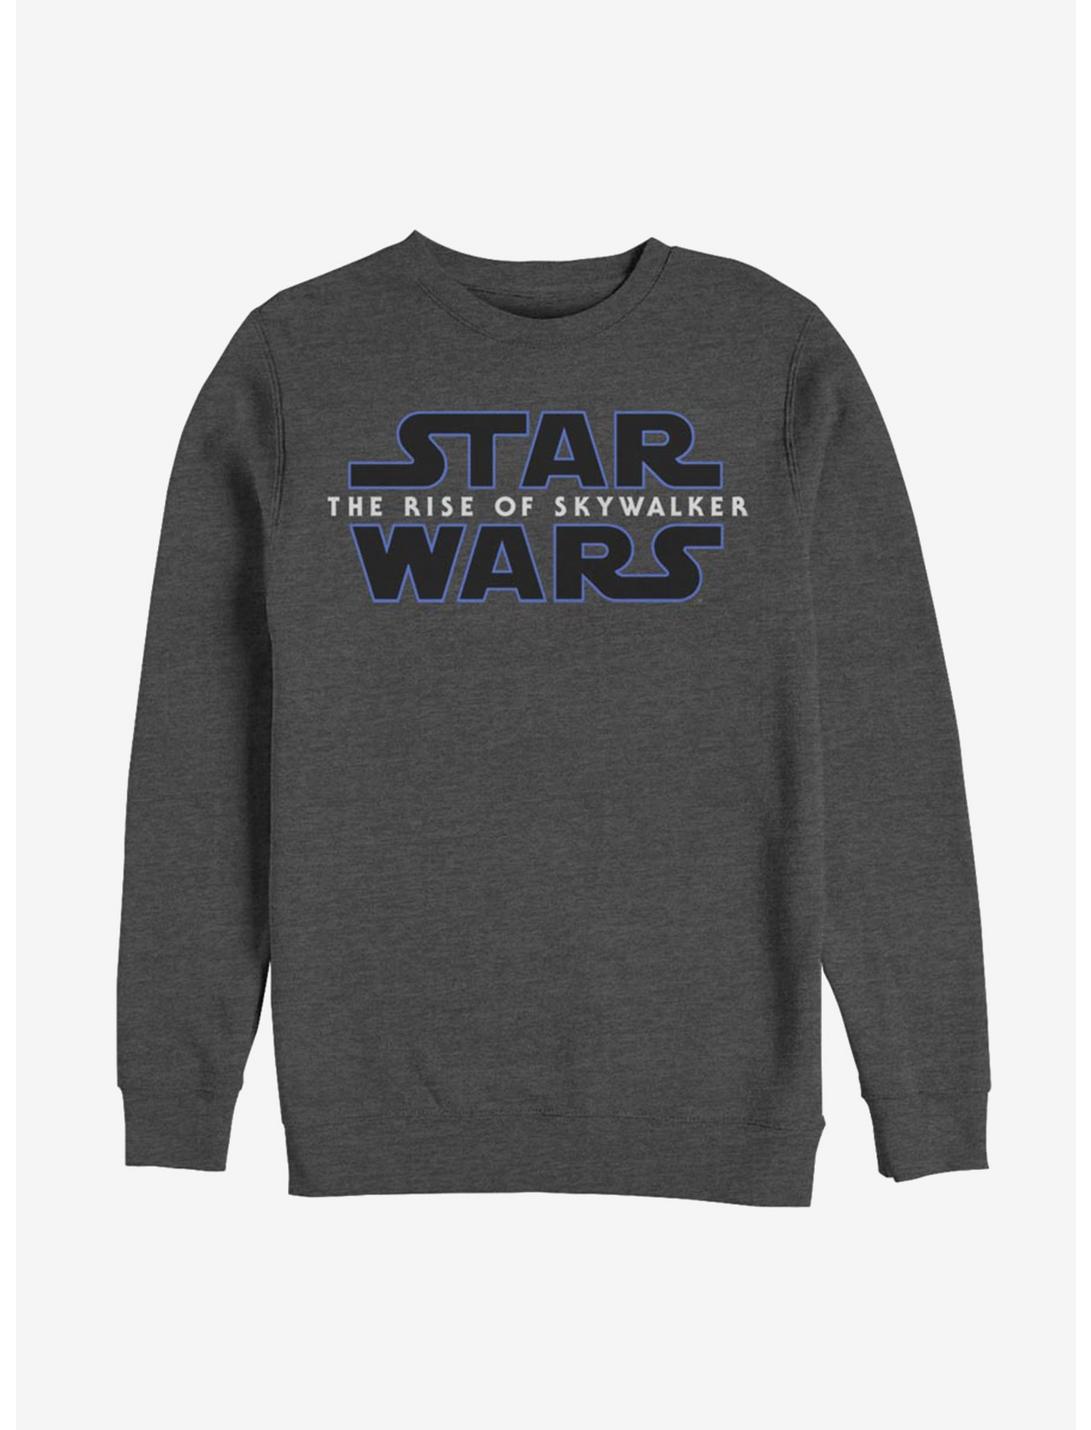 Star Wars Episode IX The Rise of Skywalker  Logo Sweatshirt, CHAR HTR, hi-res